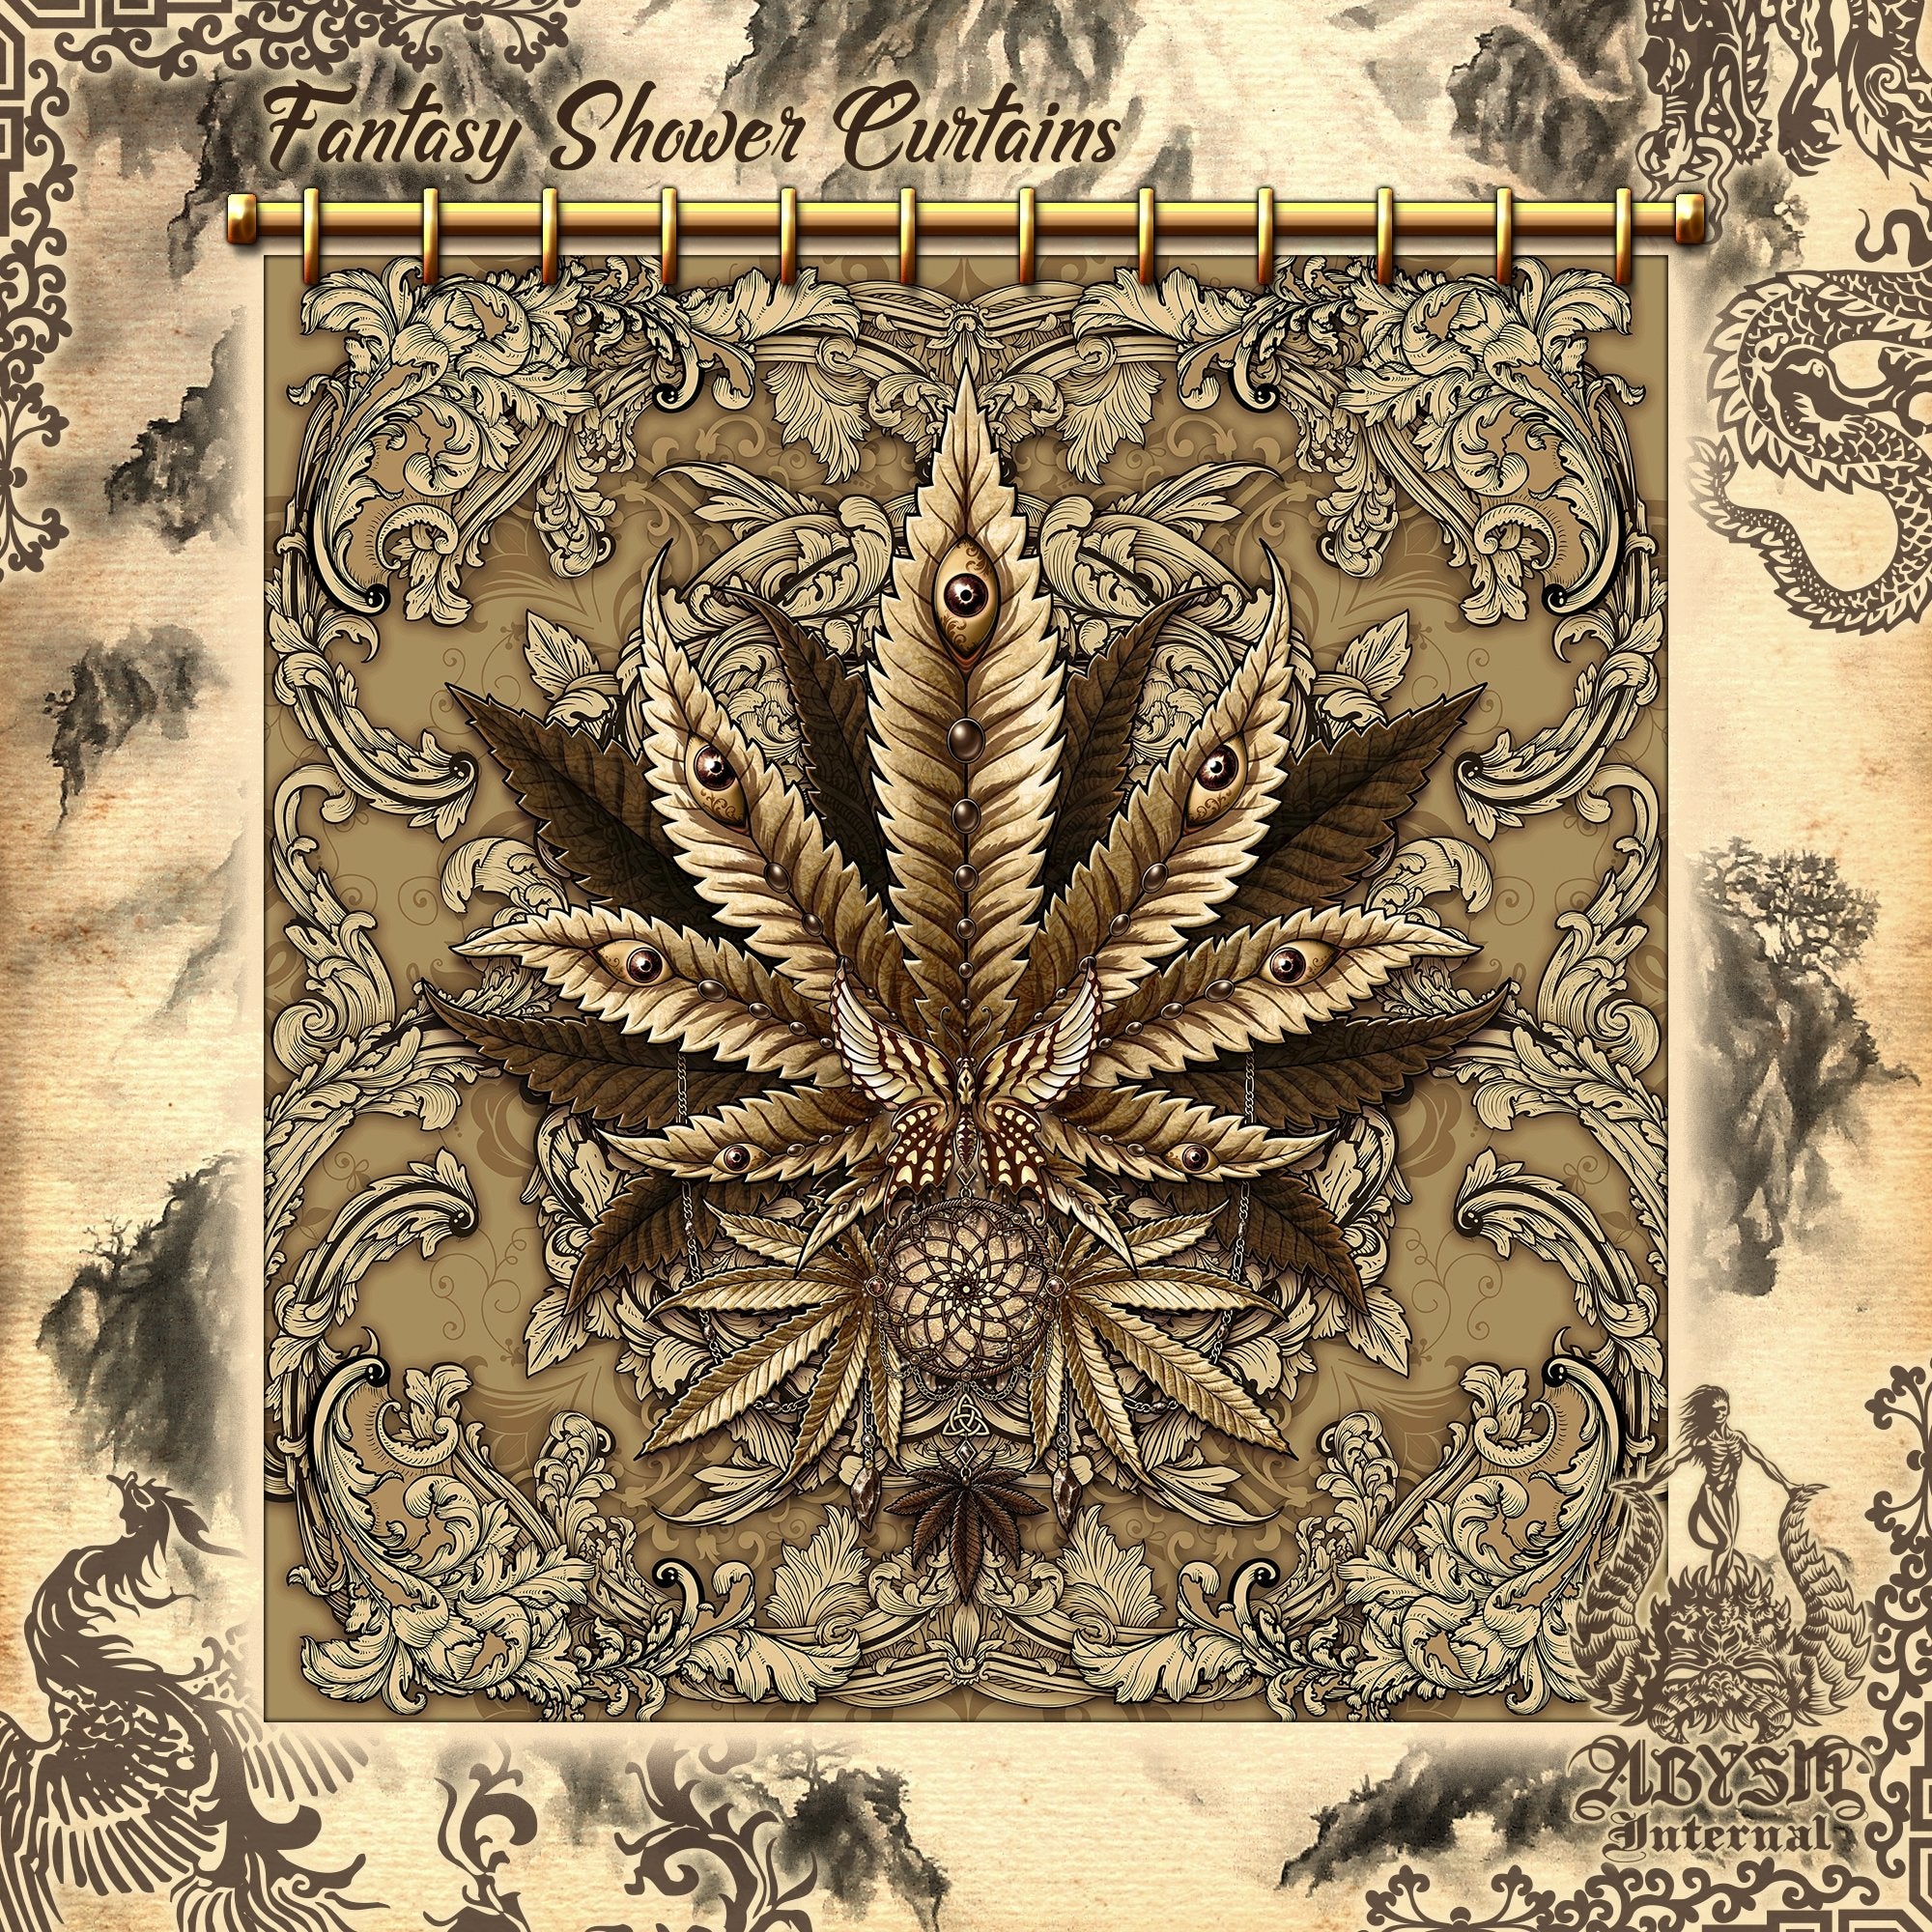 Weed Shower Curtain, Indie Bathroom Decor, Cannabis Print, Hippie 420 Home Art - Marijuana, Cream - Abysm Internal